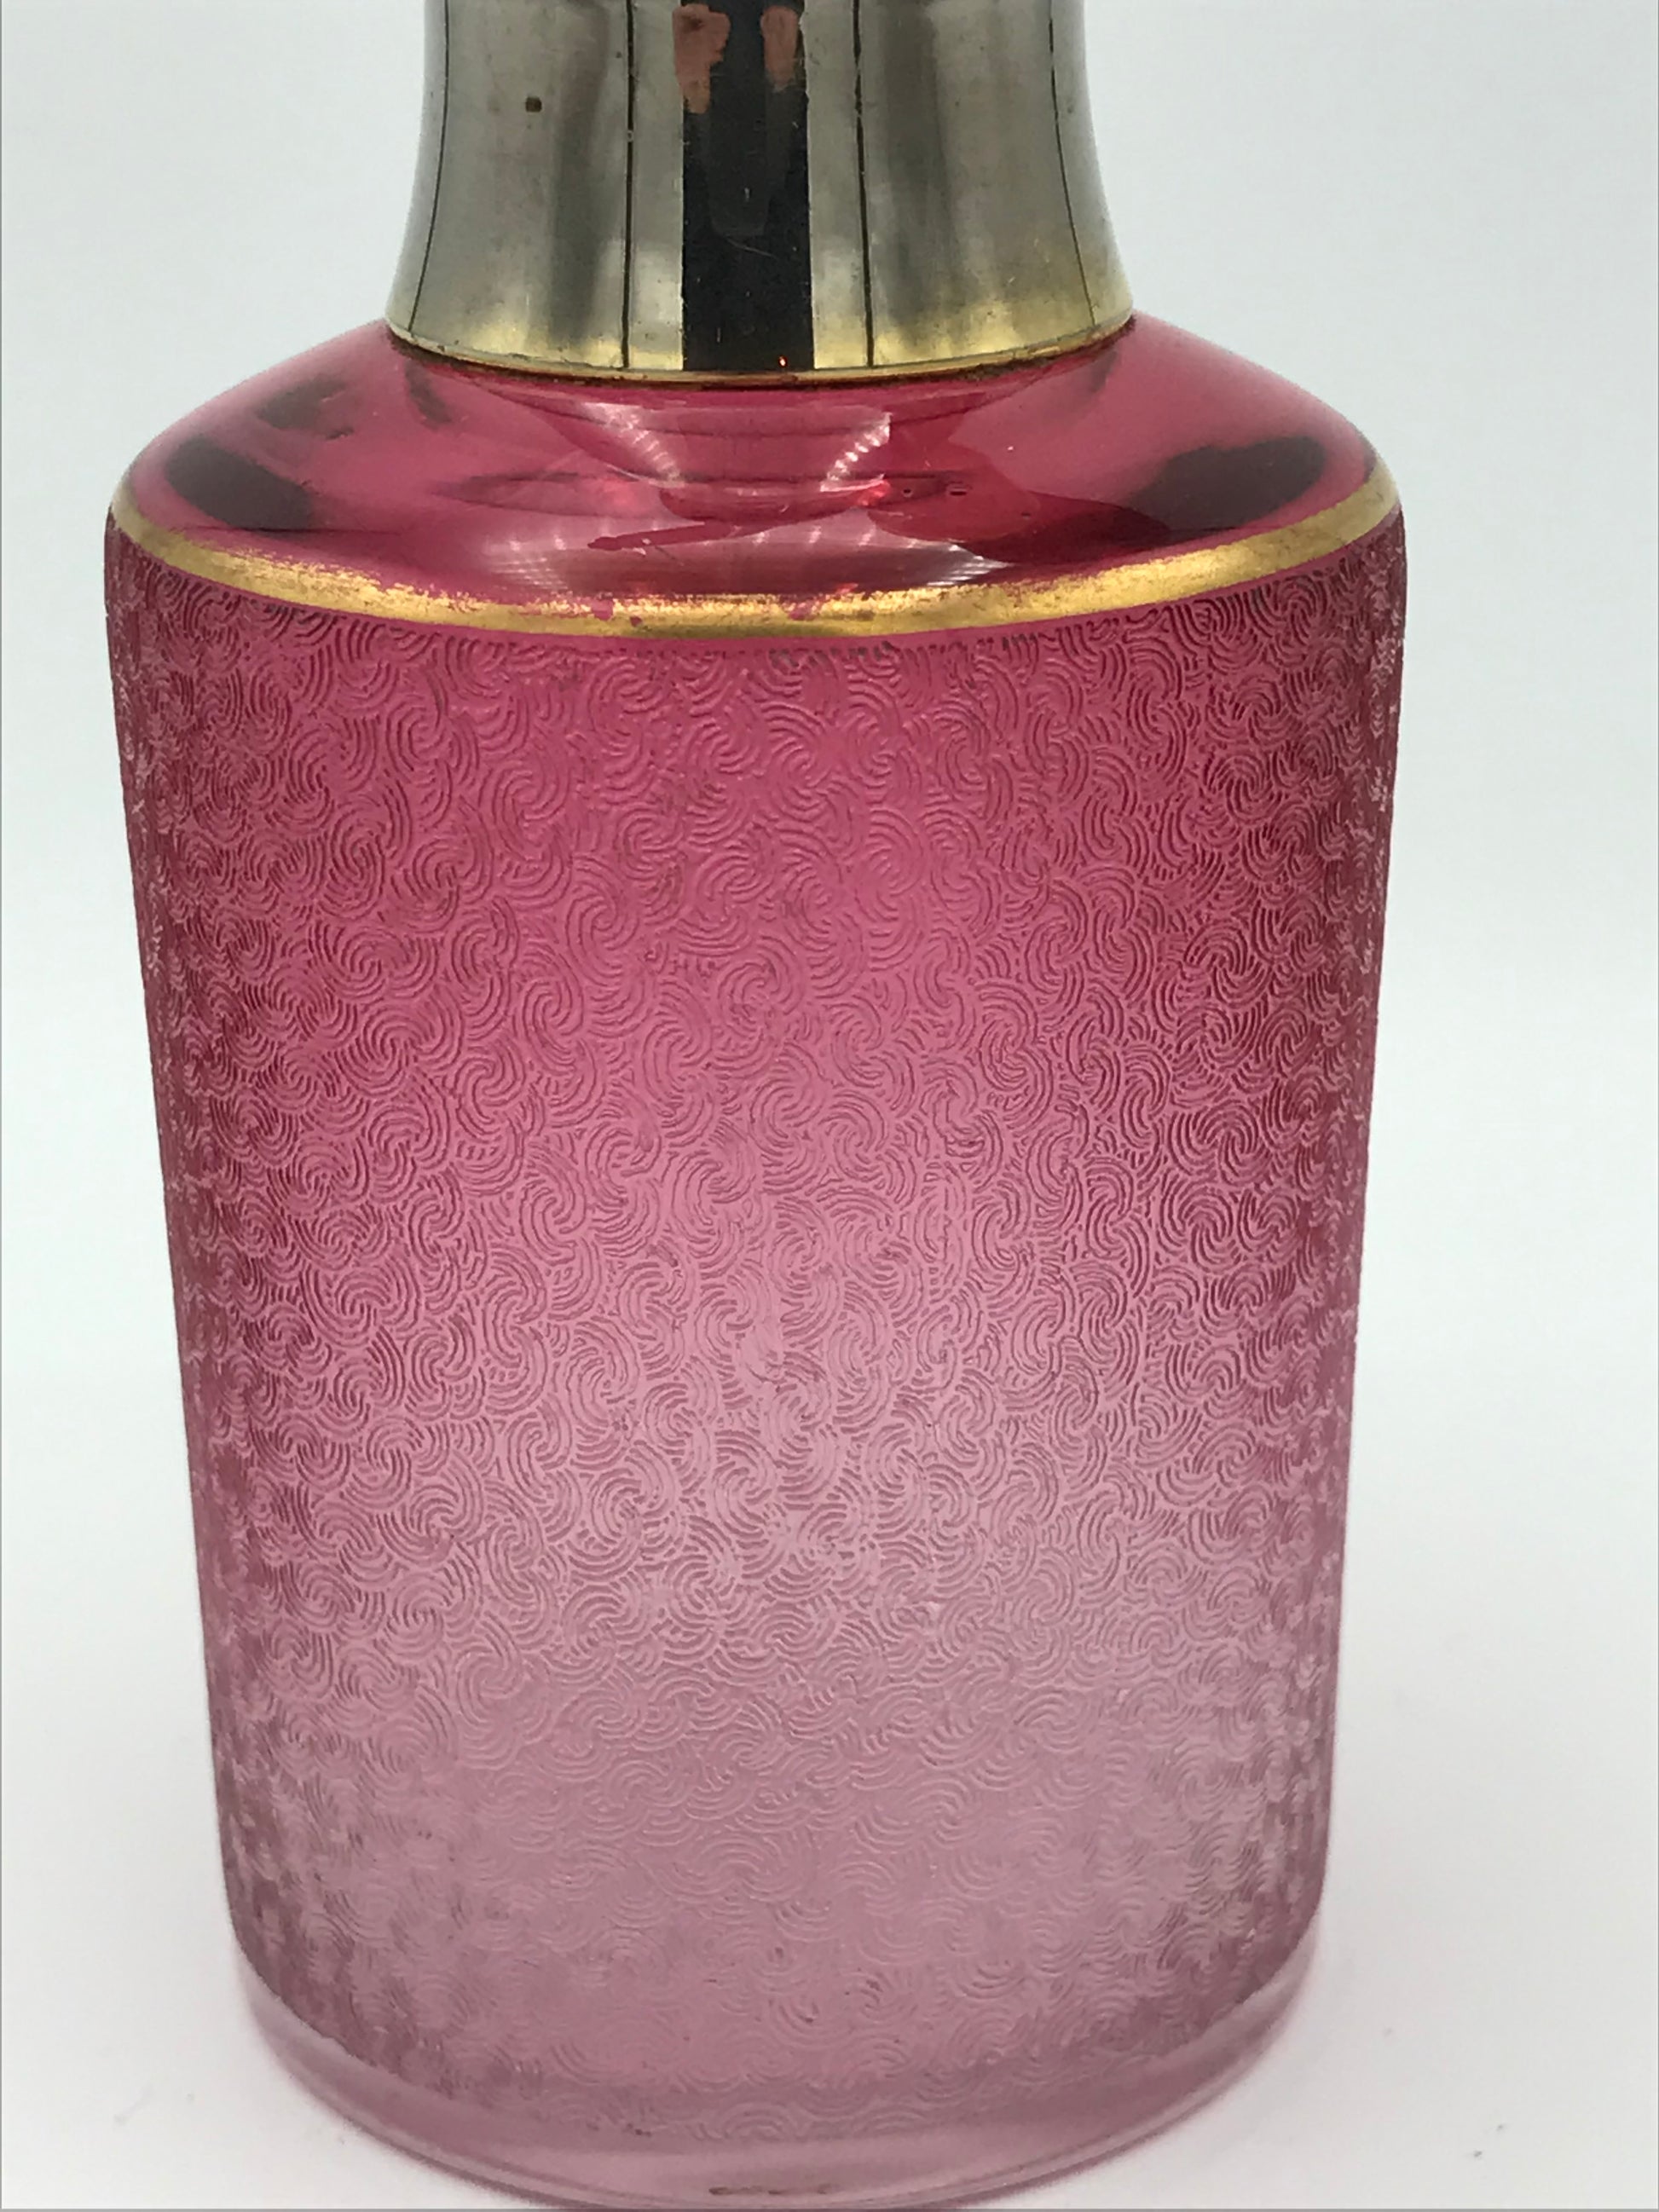 Vaporisateur à parfum Saint Louis rose - Premium Vaporisateur à parfum from Atelier Guillot - Just €310! Shop now at Atelier Guillot